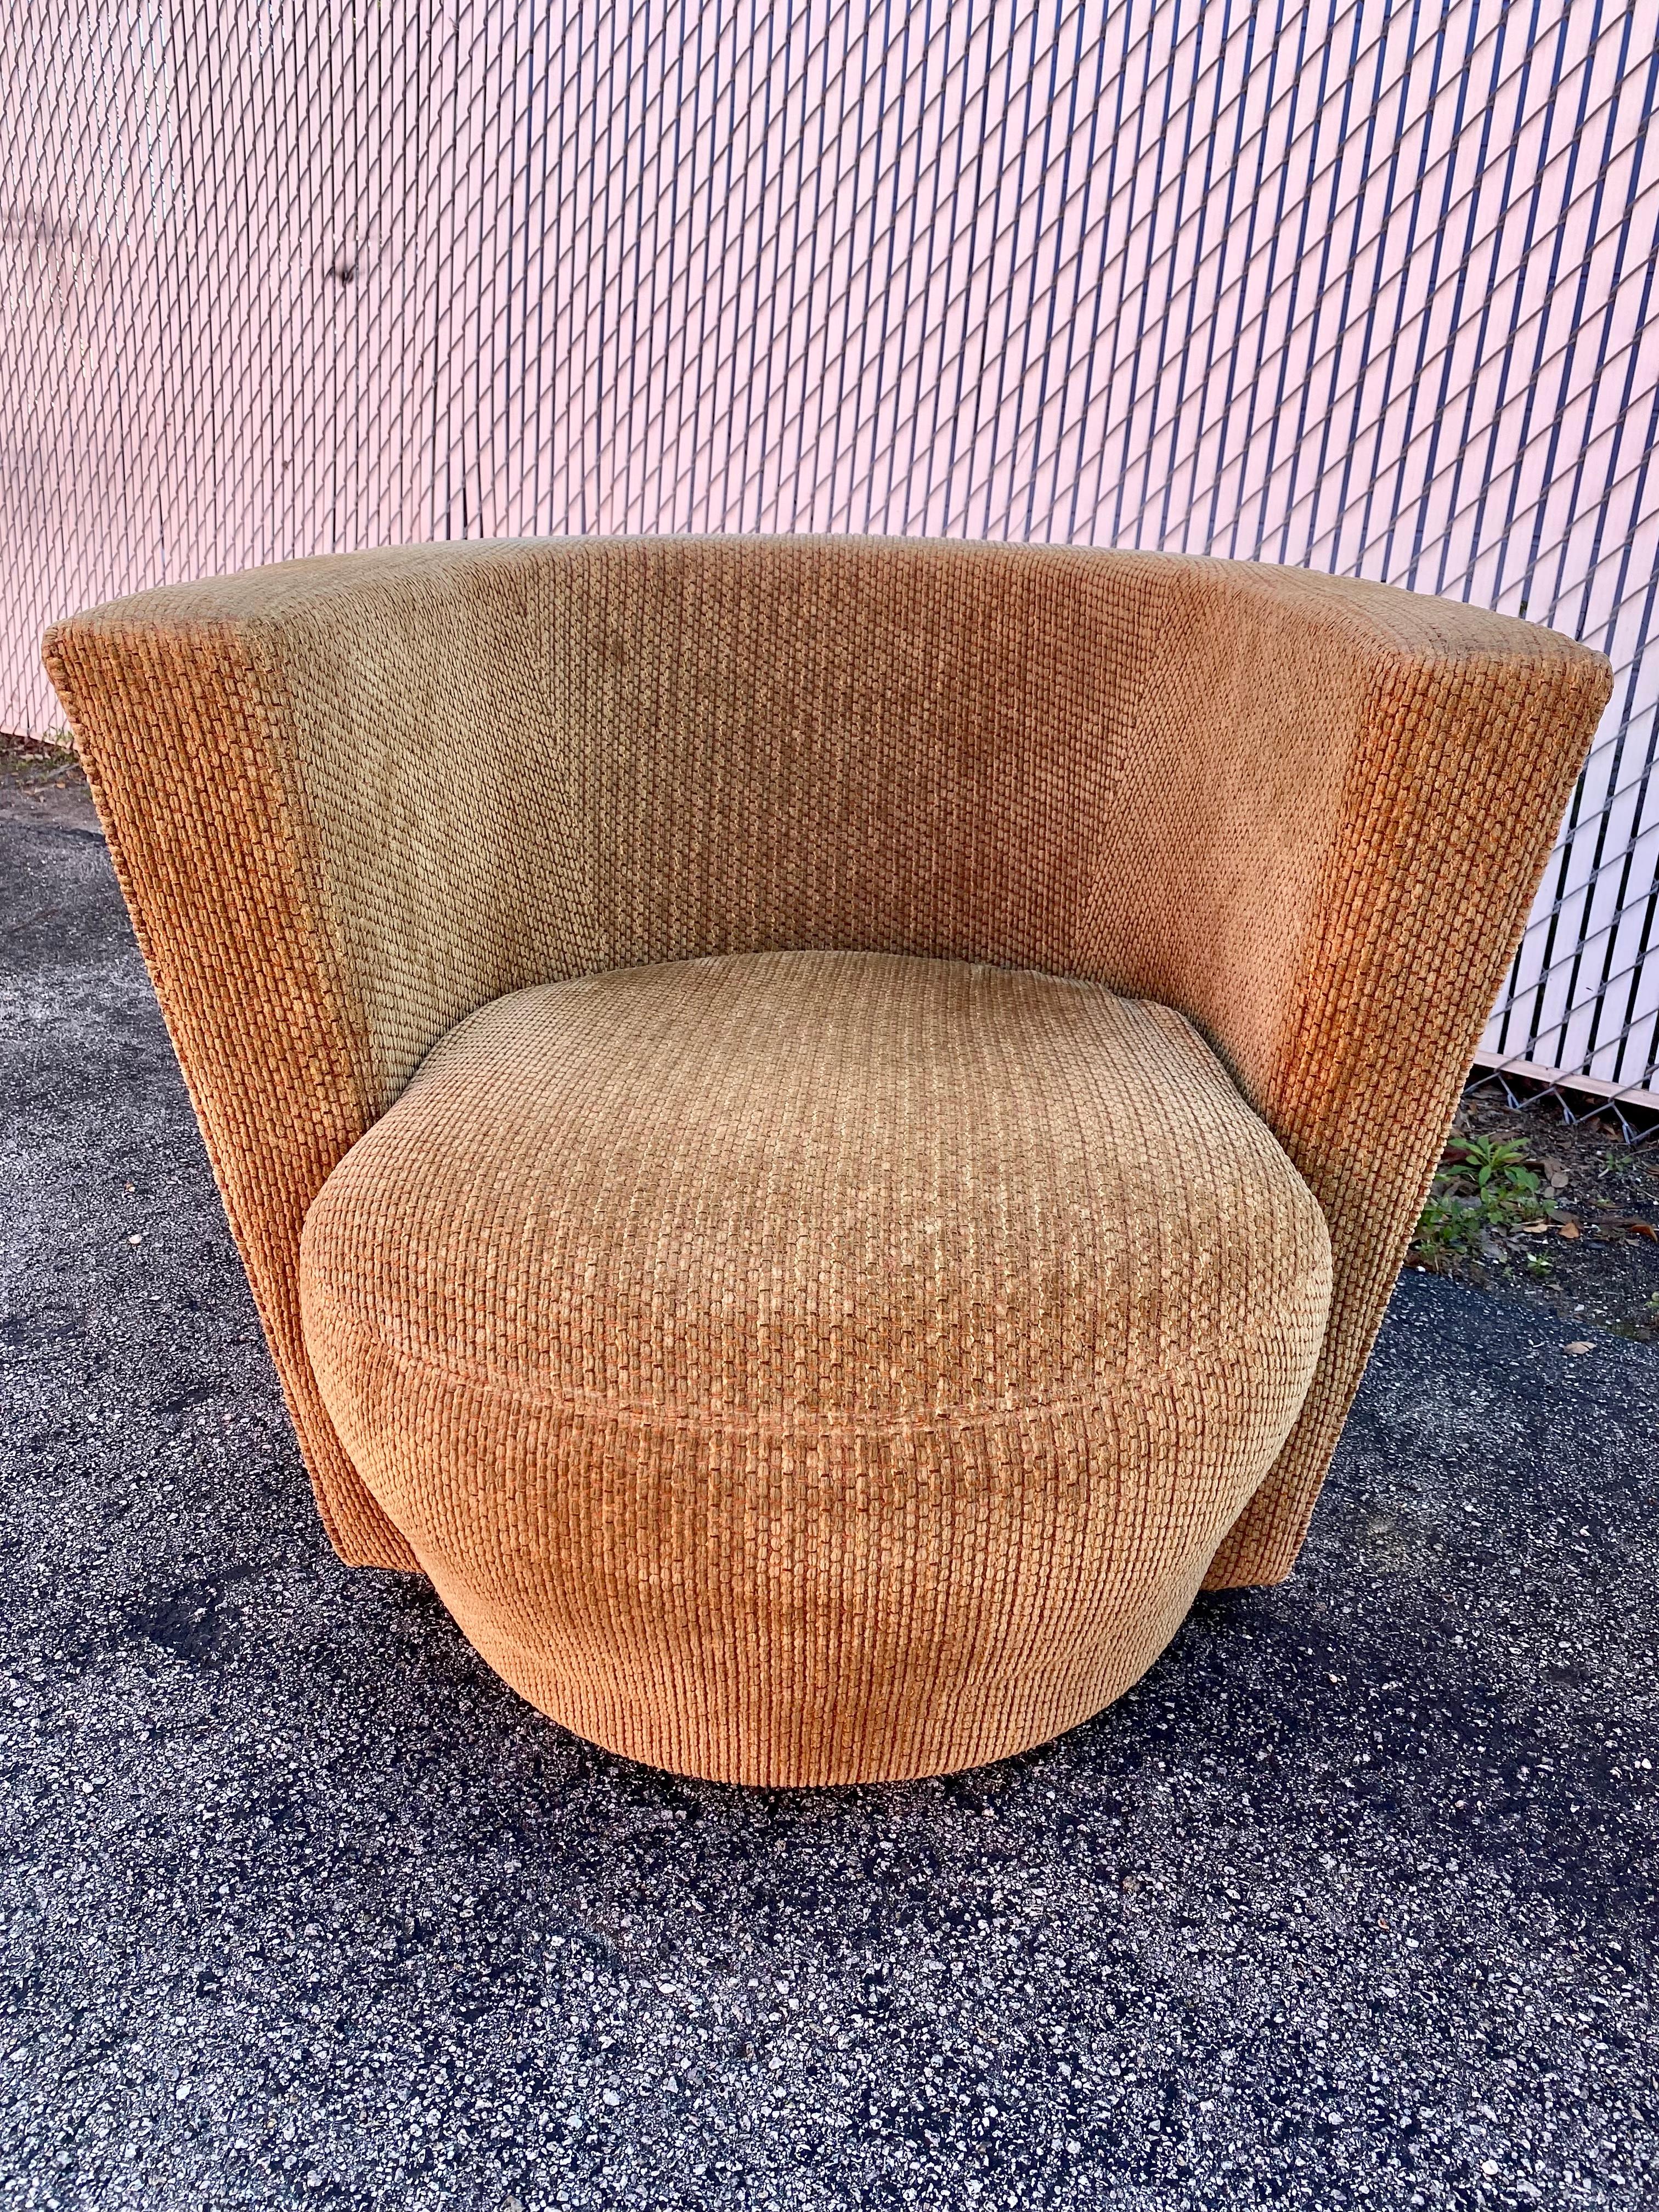 Thayer Coggin ensemble de deux chaises pivotantes sculpturales en forme de tonneau 2